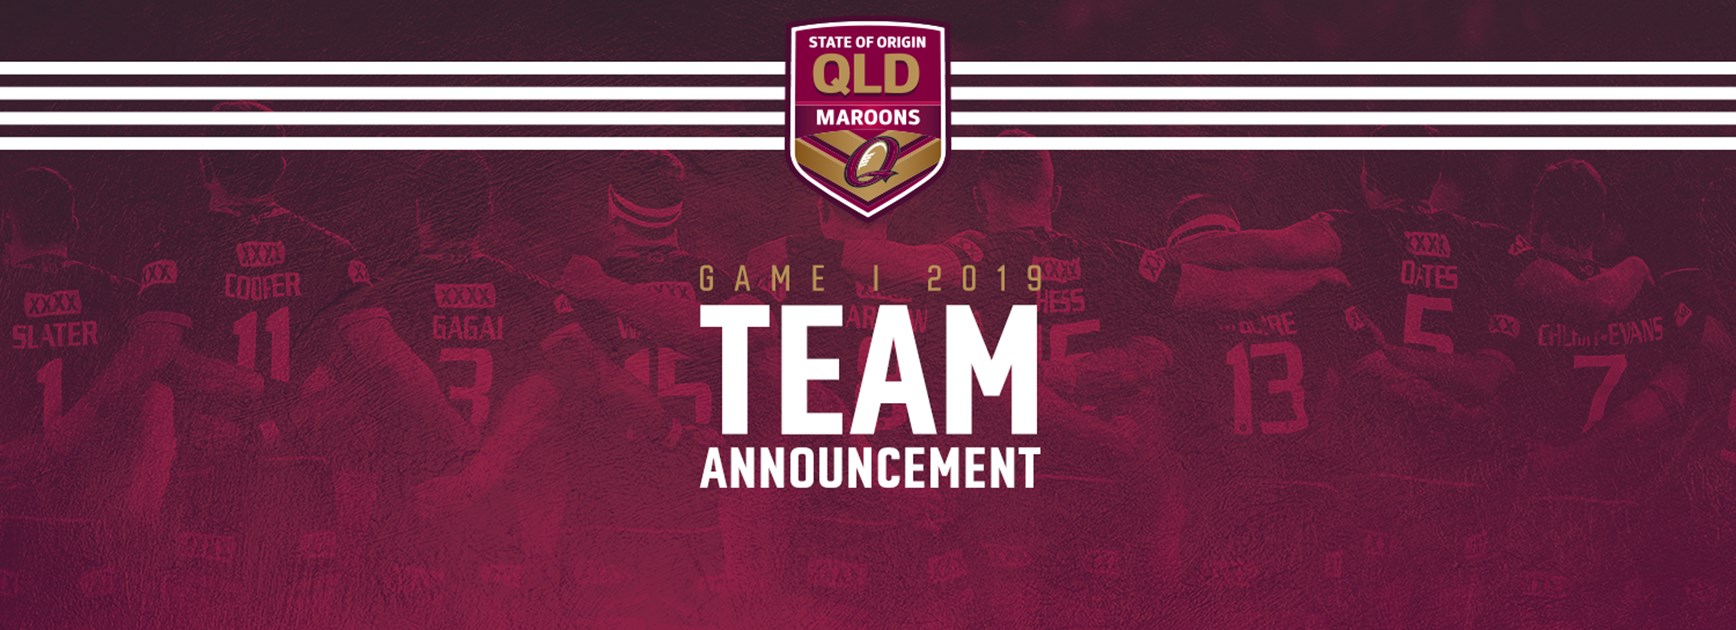 Queensland Maroons team for Origin opener